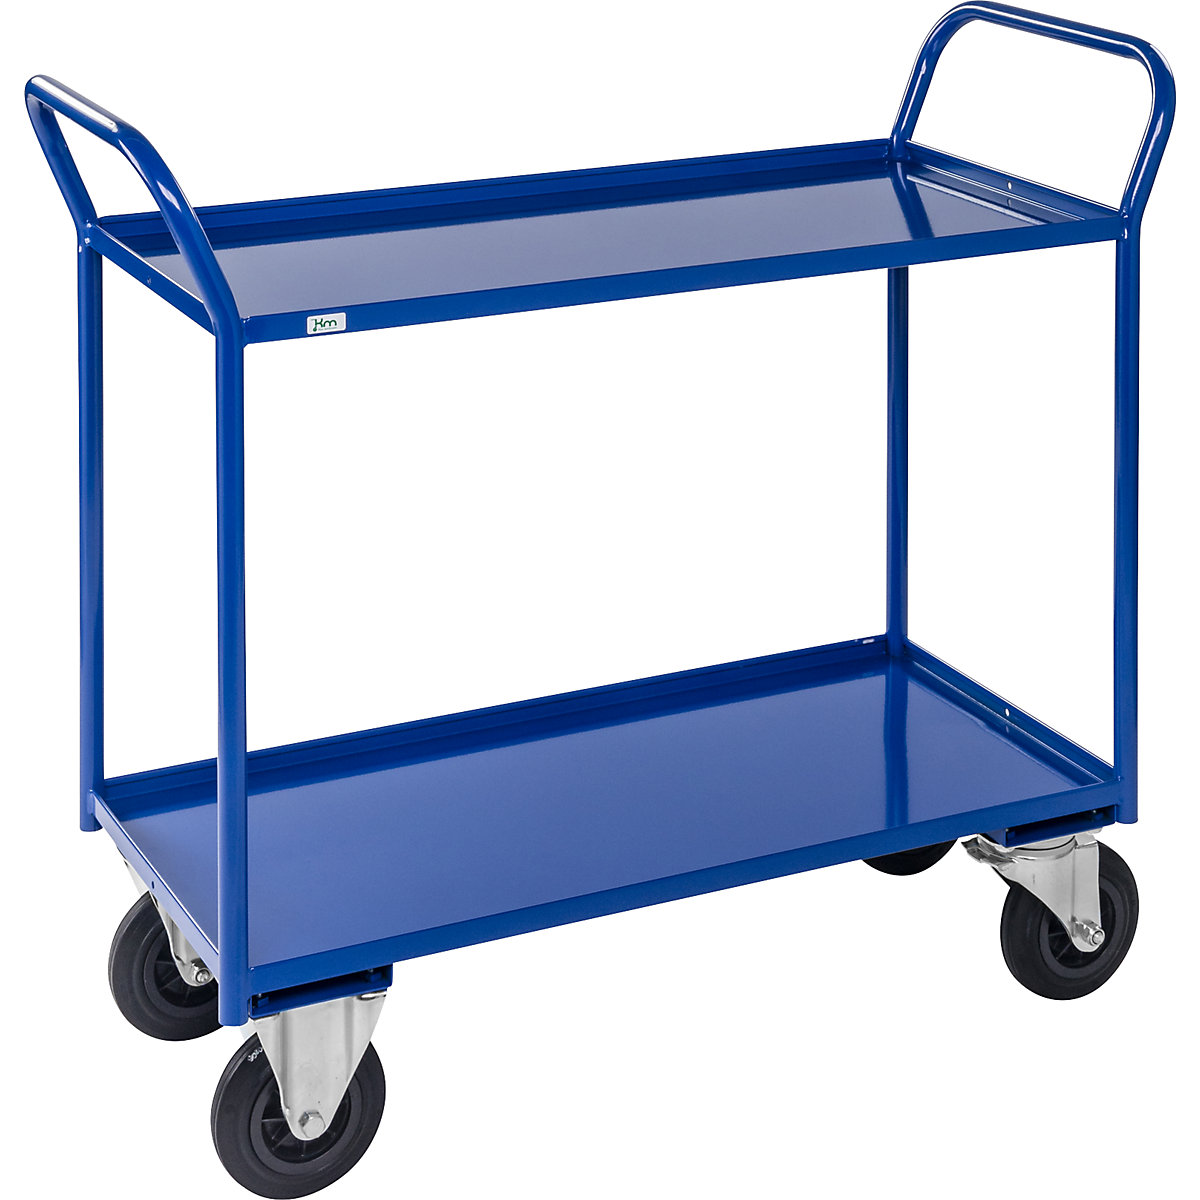 Stolový vozík KM41 – Kongamek, 2 etáže se zvýšenou hranou, d x š x v 1070 x 550 x 1000 mm, modrá, 2 otočná a 2 pevná kola, od 5 kusů-3